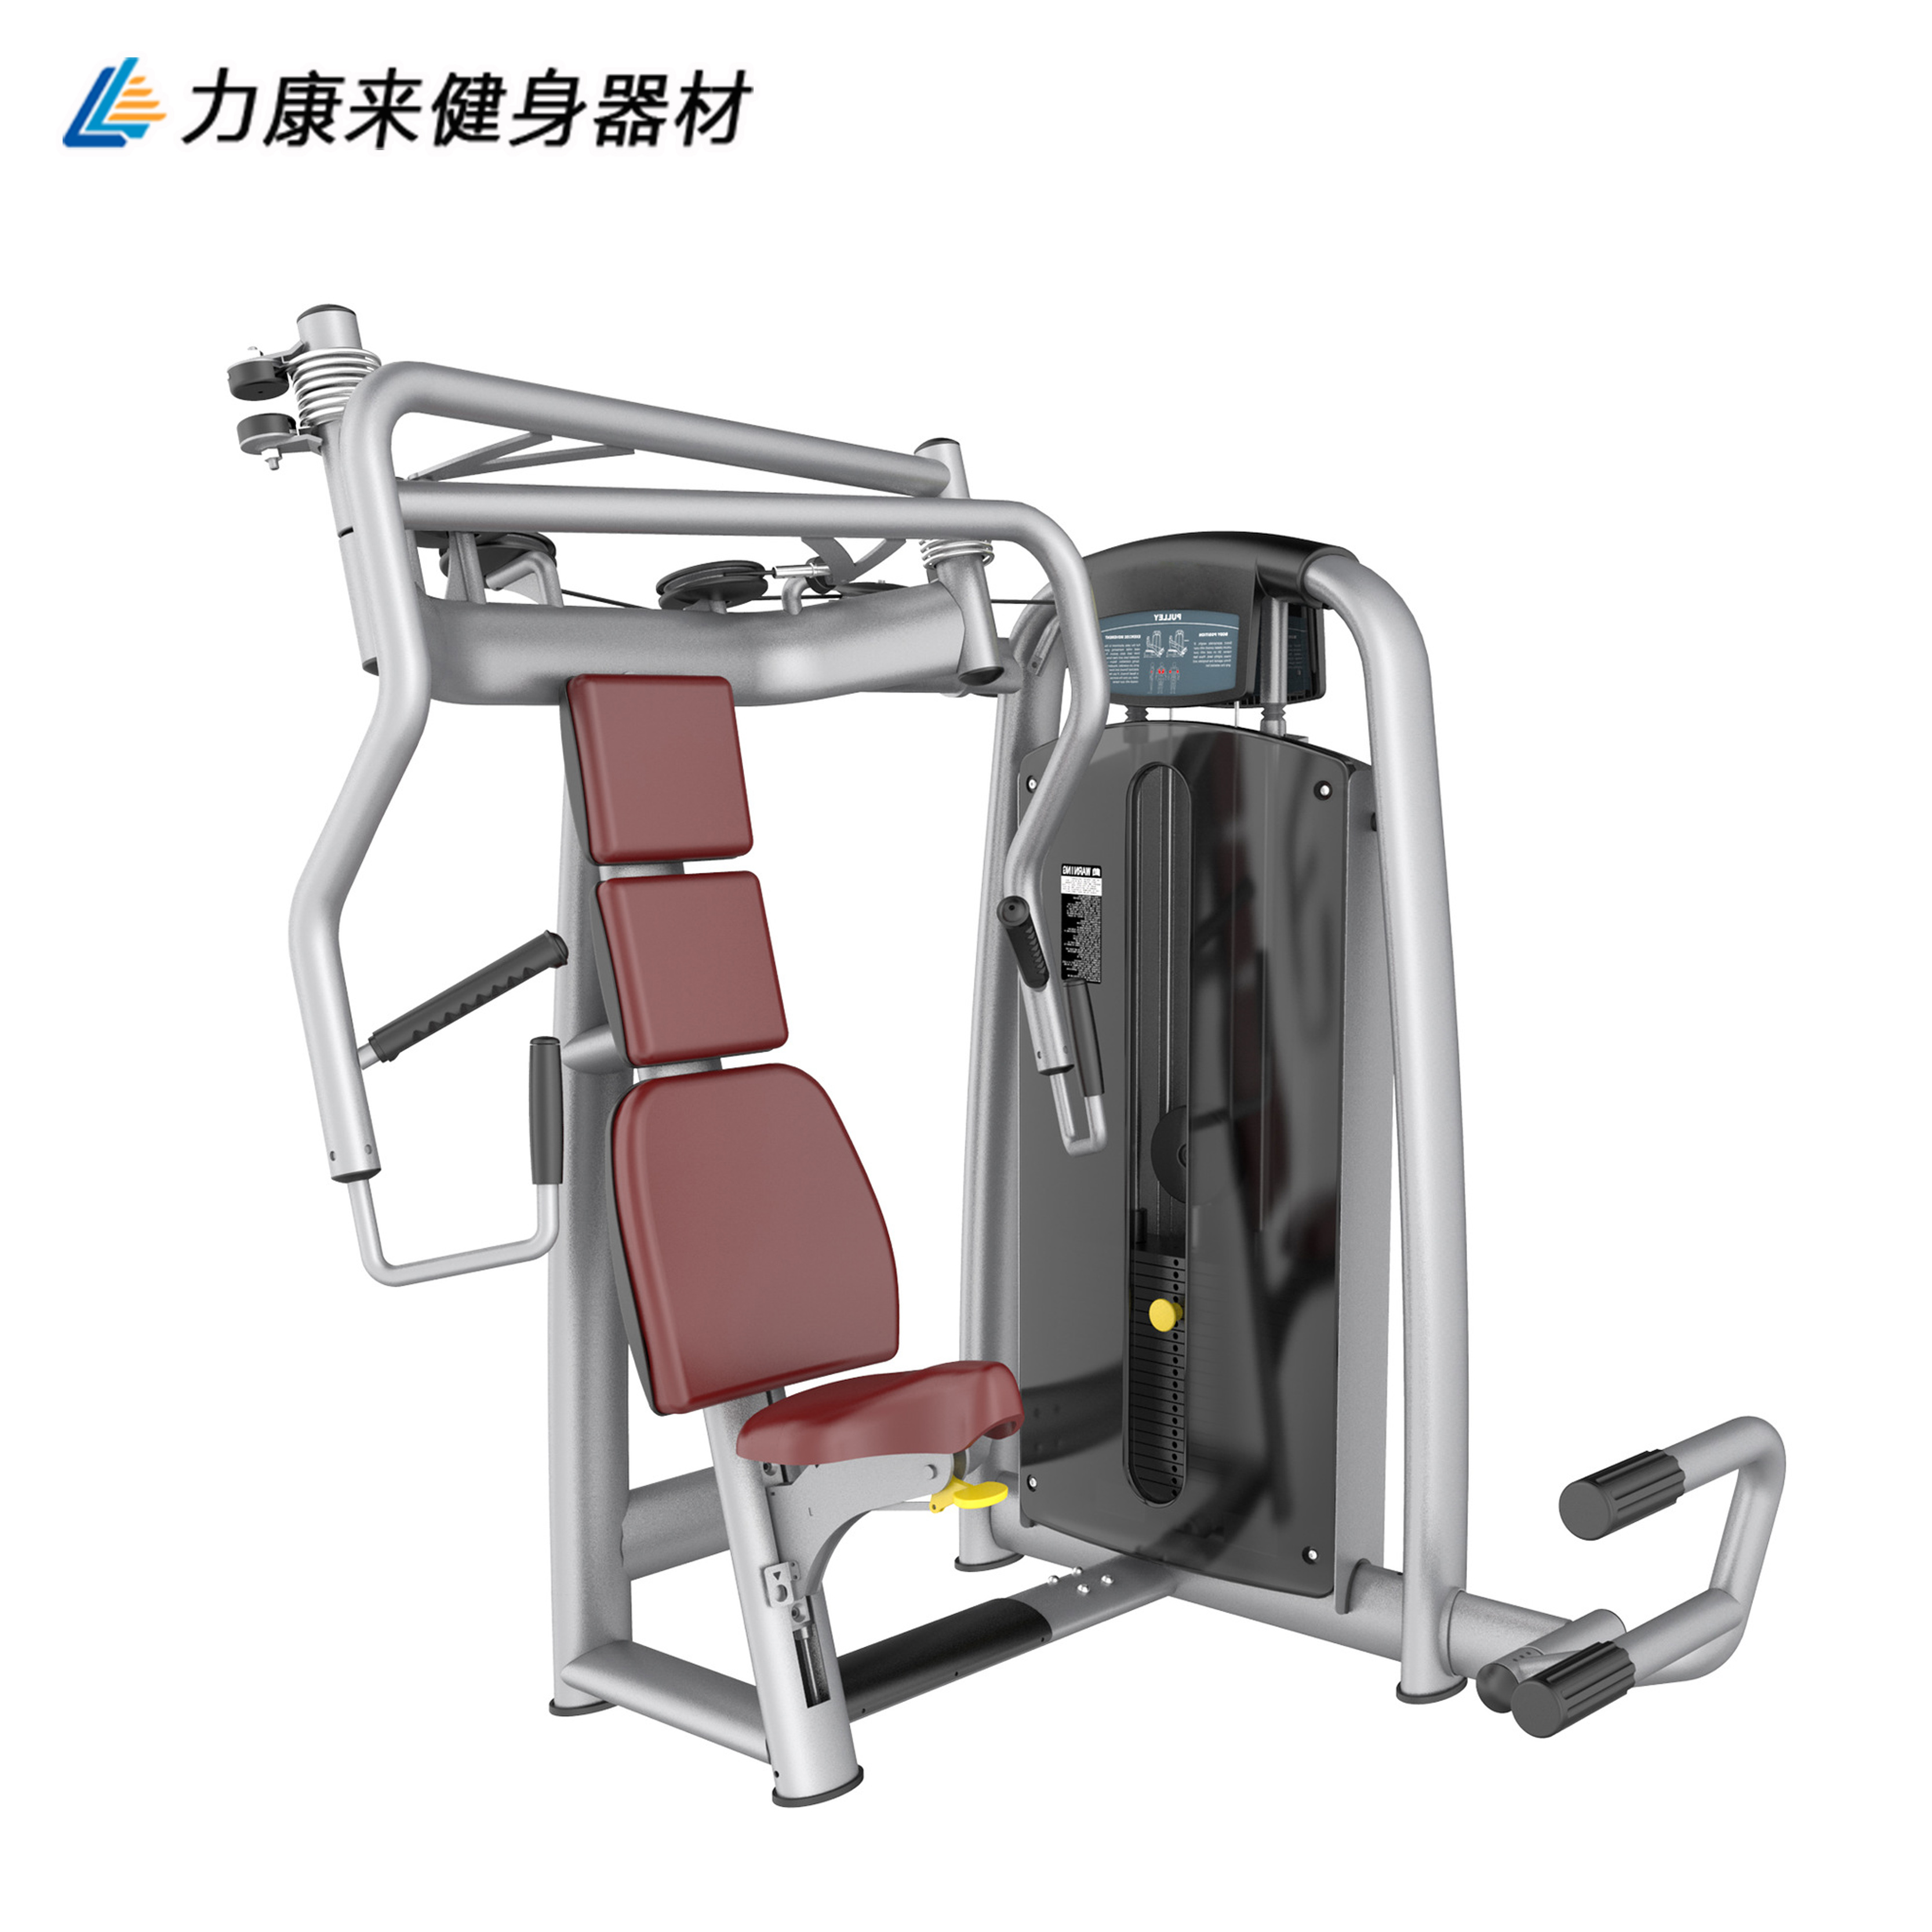 商用坐式双向推胸训练器 泰诺健插片式综合型 室内力量运动器材